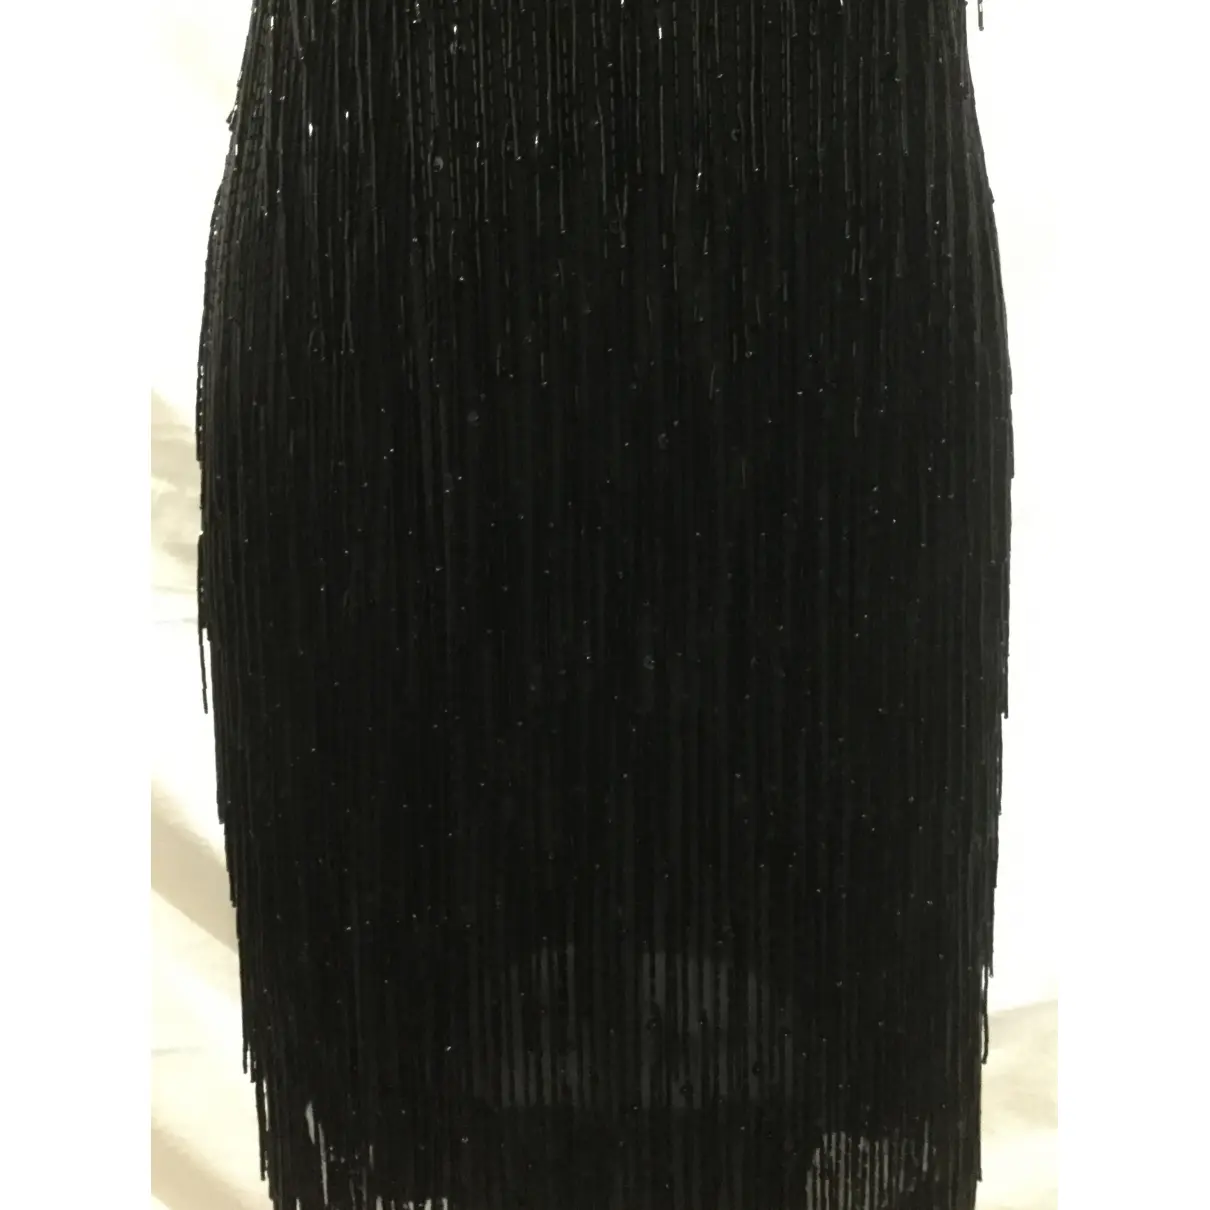 Silk mid-length dress Black Tie Oleg Cassini - Vintage